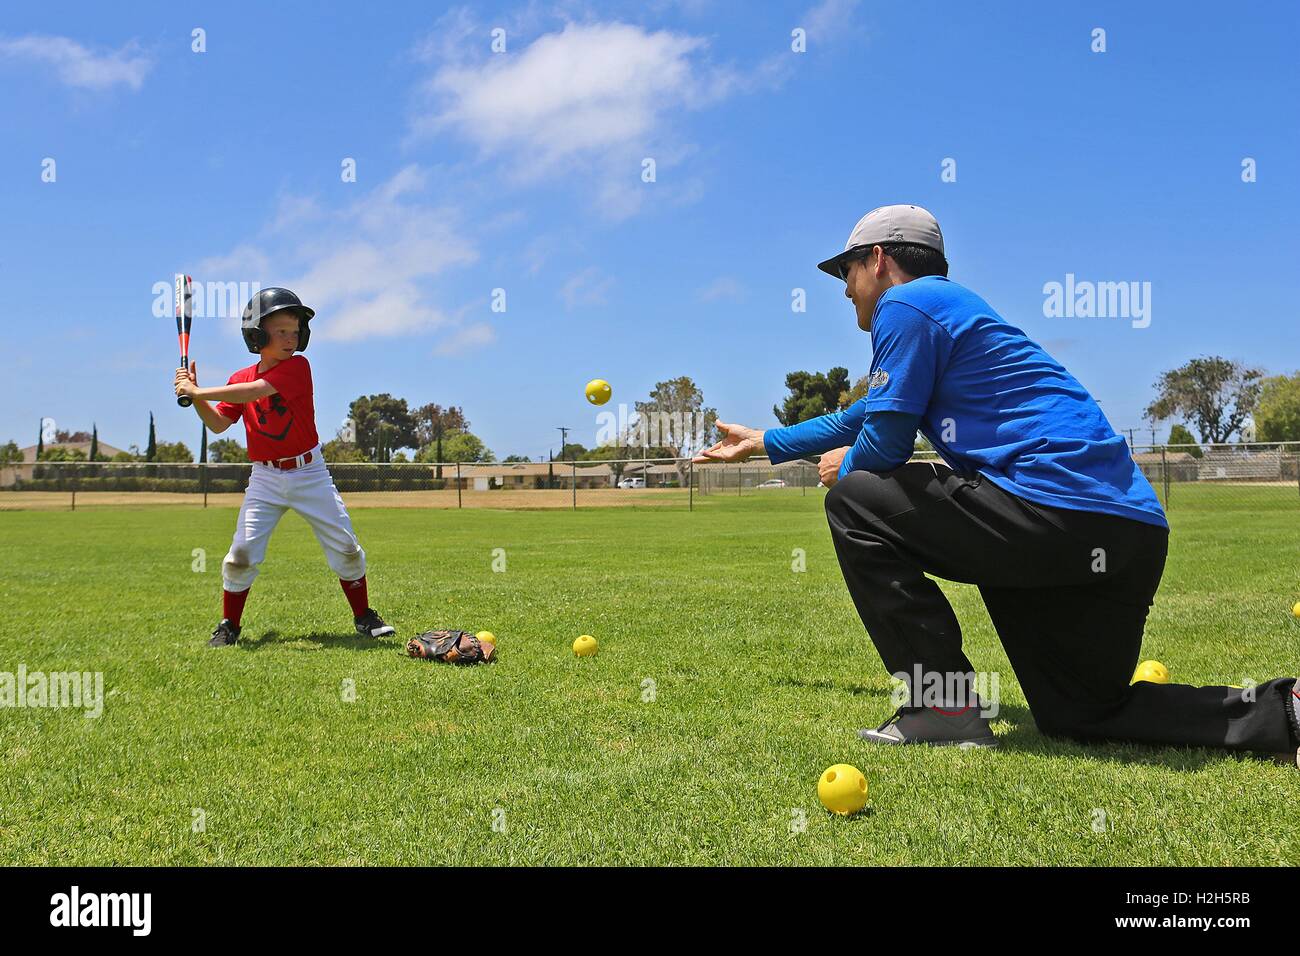 Un joven se prepara para swing en una pelota de béisbol durante un campamento de verano con el ex jugador profesional de béisbol Adrian Burnside en el cable de montaña campo de béisbol el 12 de julio de 2016 en Camp Pendleton, California. Foto de stock